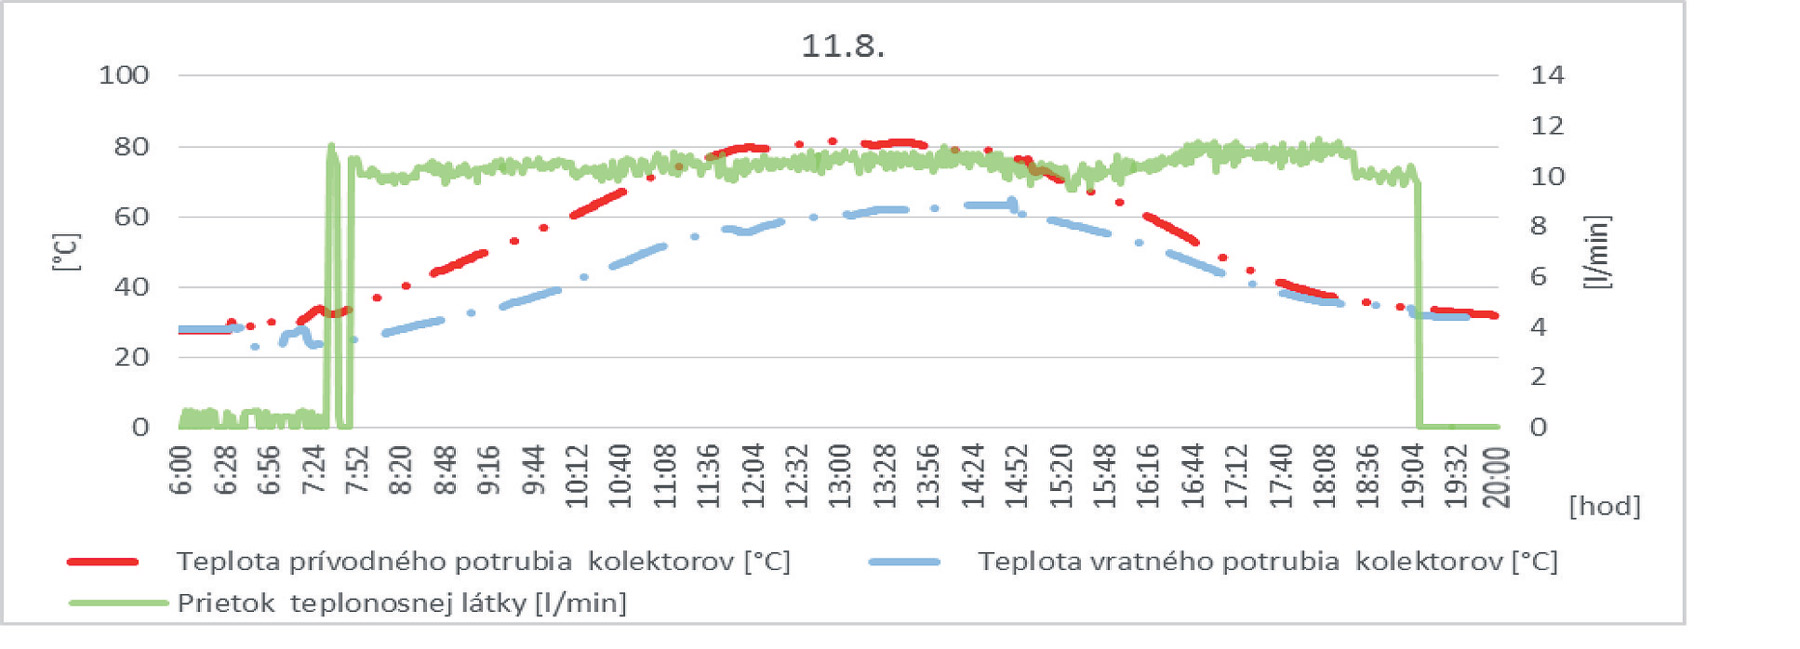 Obr. 2 Vplyv teploty prívodného a vratného potrubia kolektorov na prietok teplonosnej látky v kolektorovom okruhu dňa 11. 8. 2015